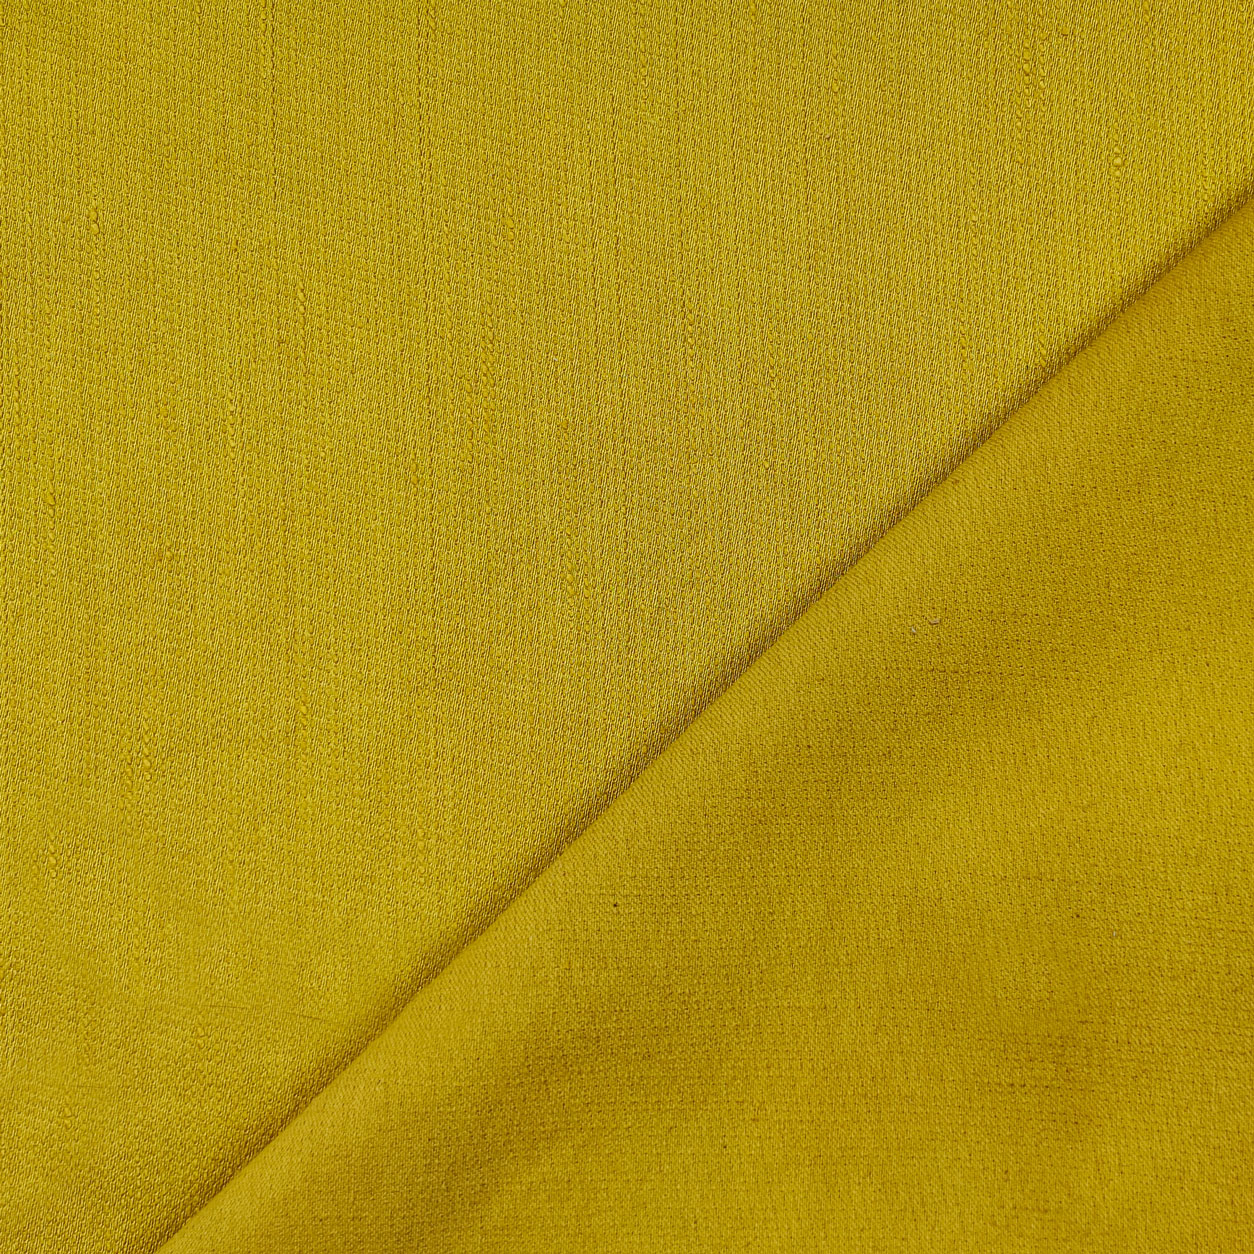 tessuti-bourette-seta-giallo-oro